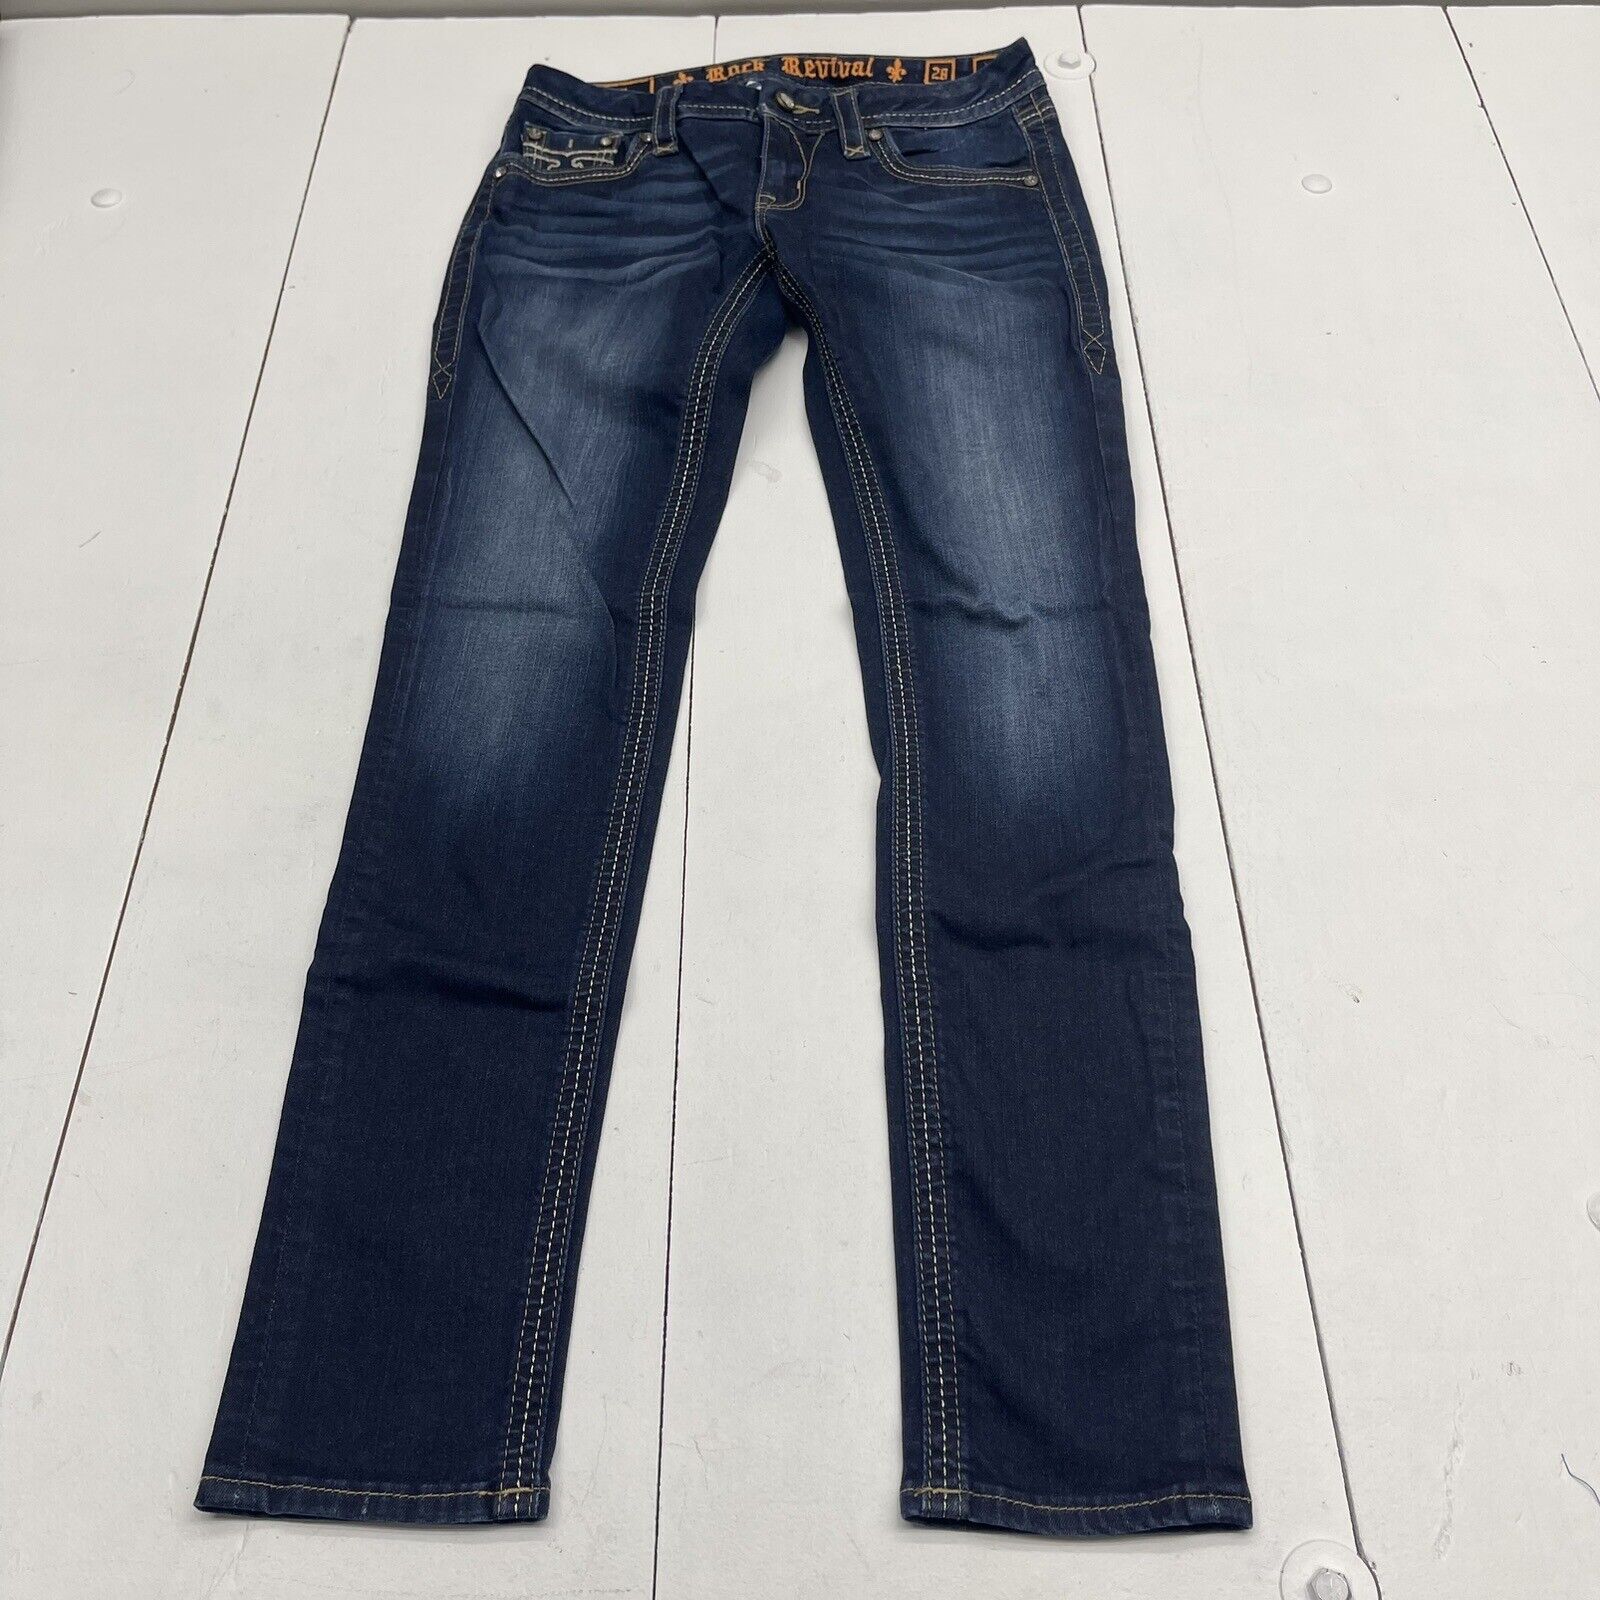 Rock Revival Alivia Dark Blue Skinny Jeans Women’s Size 28